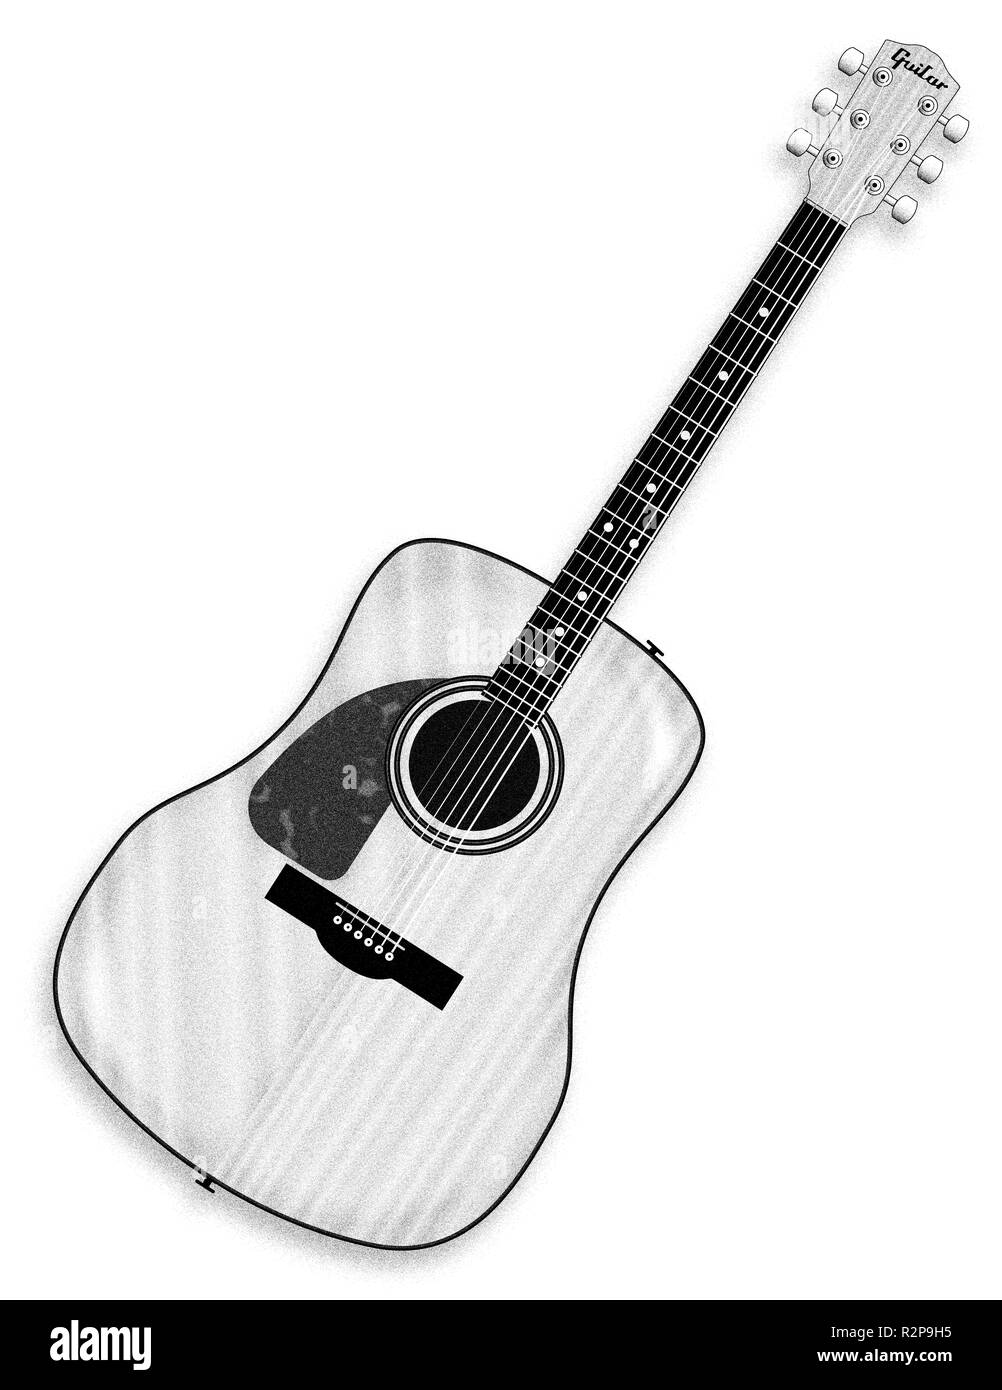 Acoustic guitar sketch Banque d'images noir et blanc - Alamy